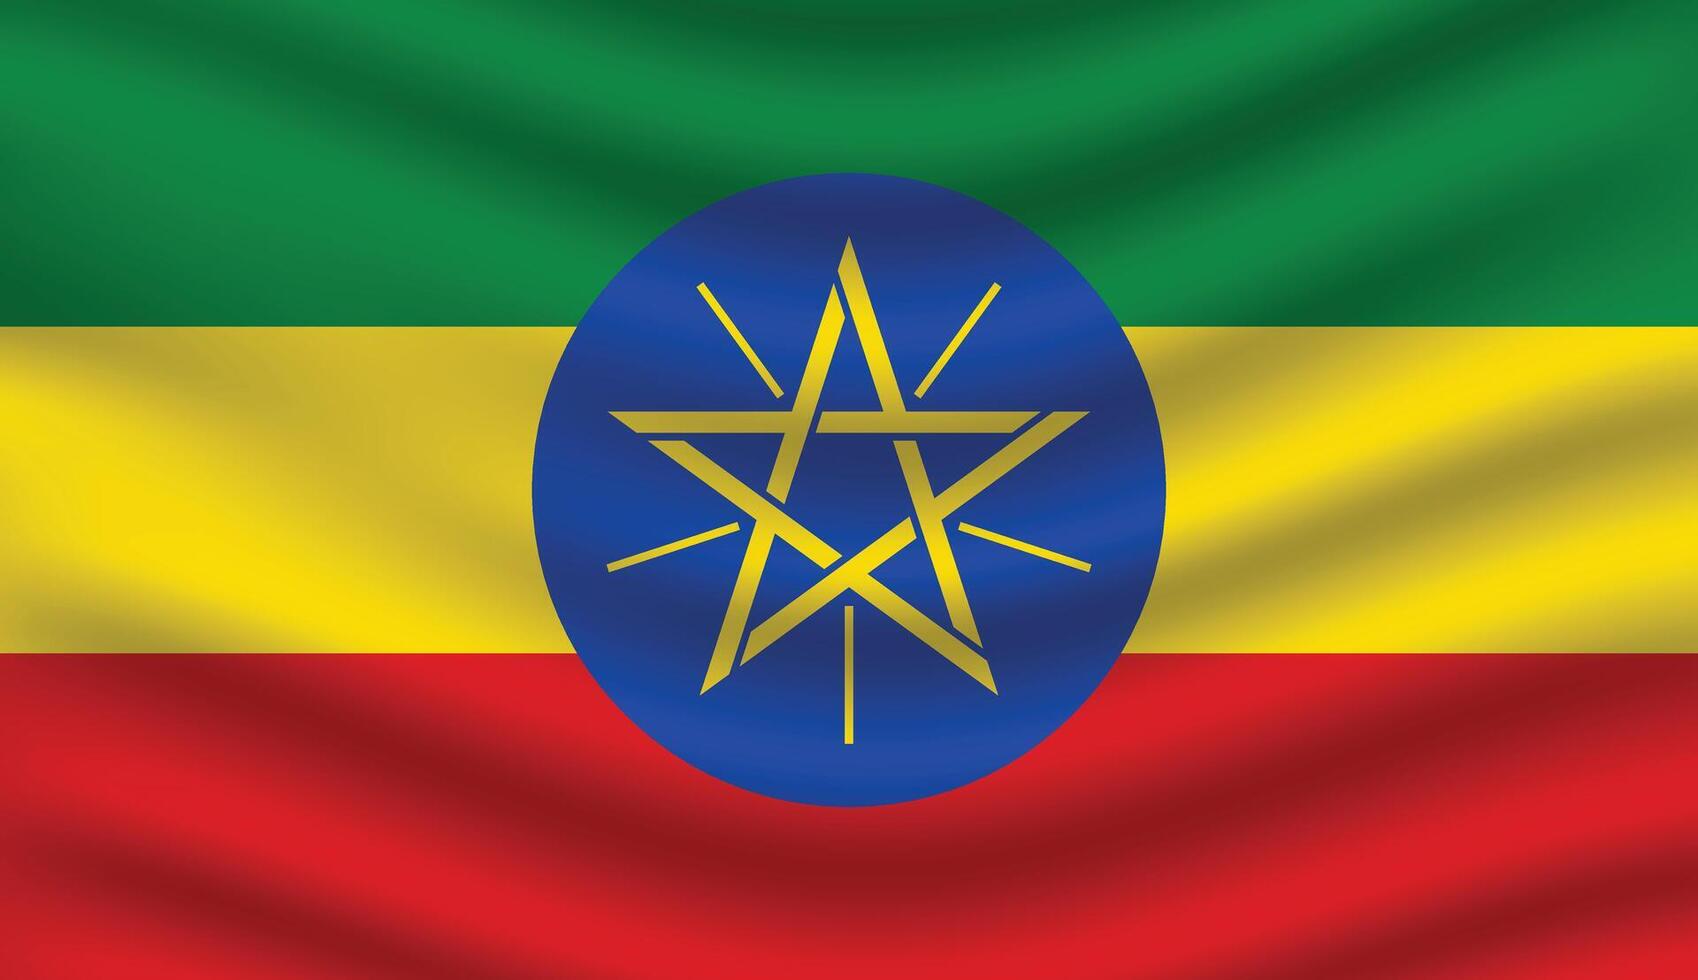 vlak illustratie van Ethiopië nationaal vlag. Ethiopië vlag ontwerp. Ethiopië Golf vlag. vector